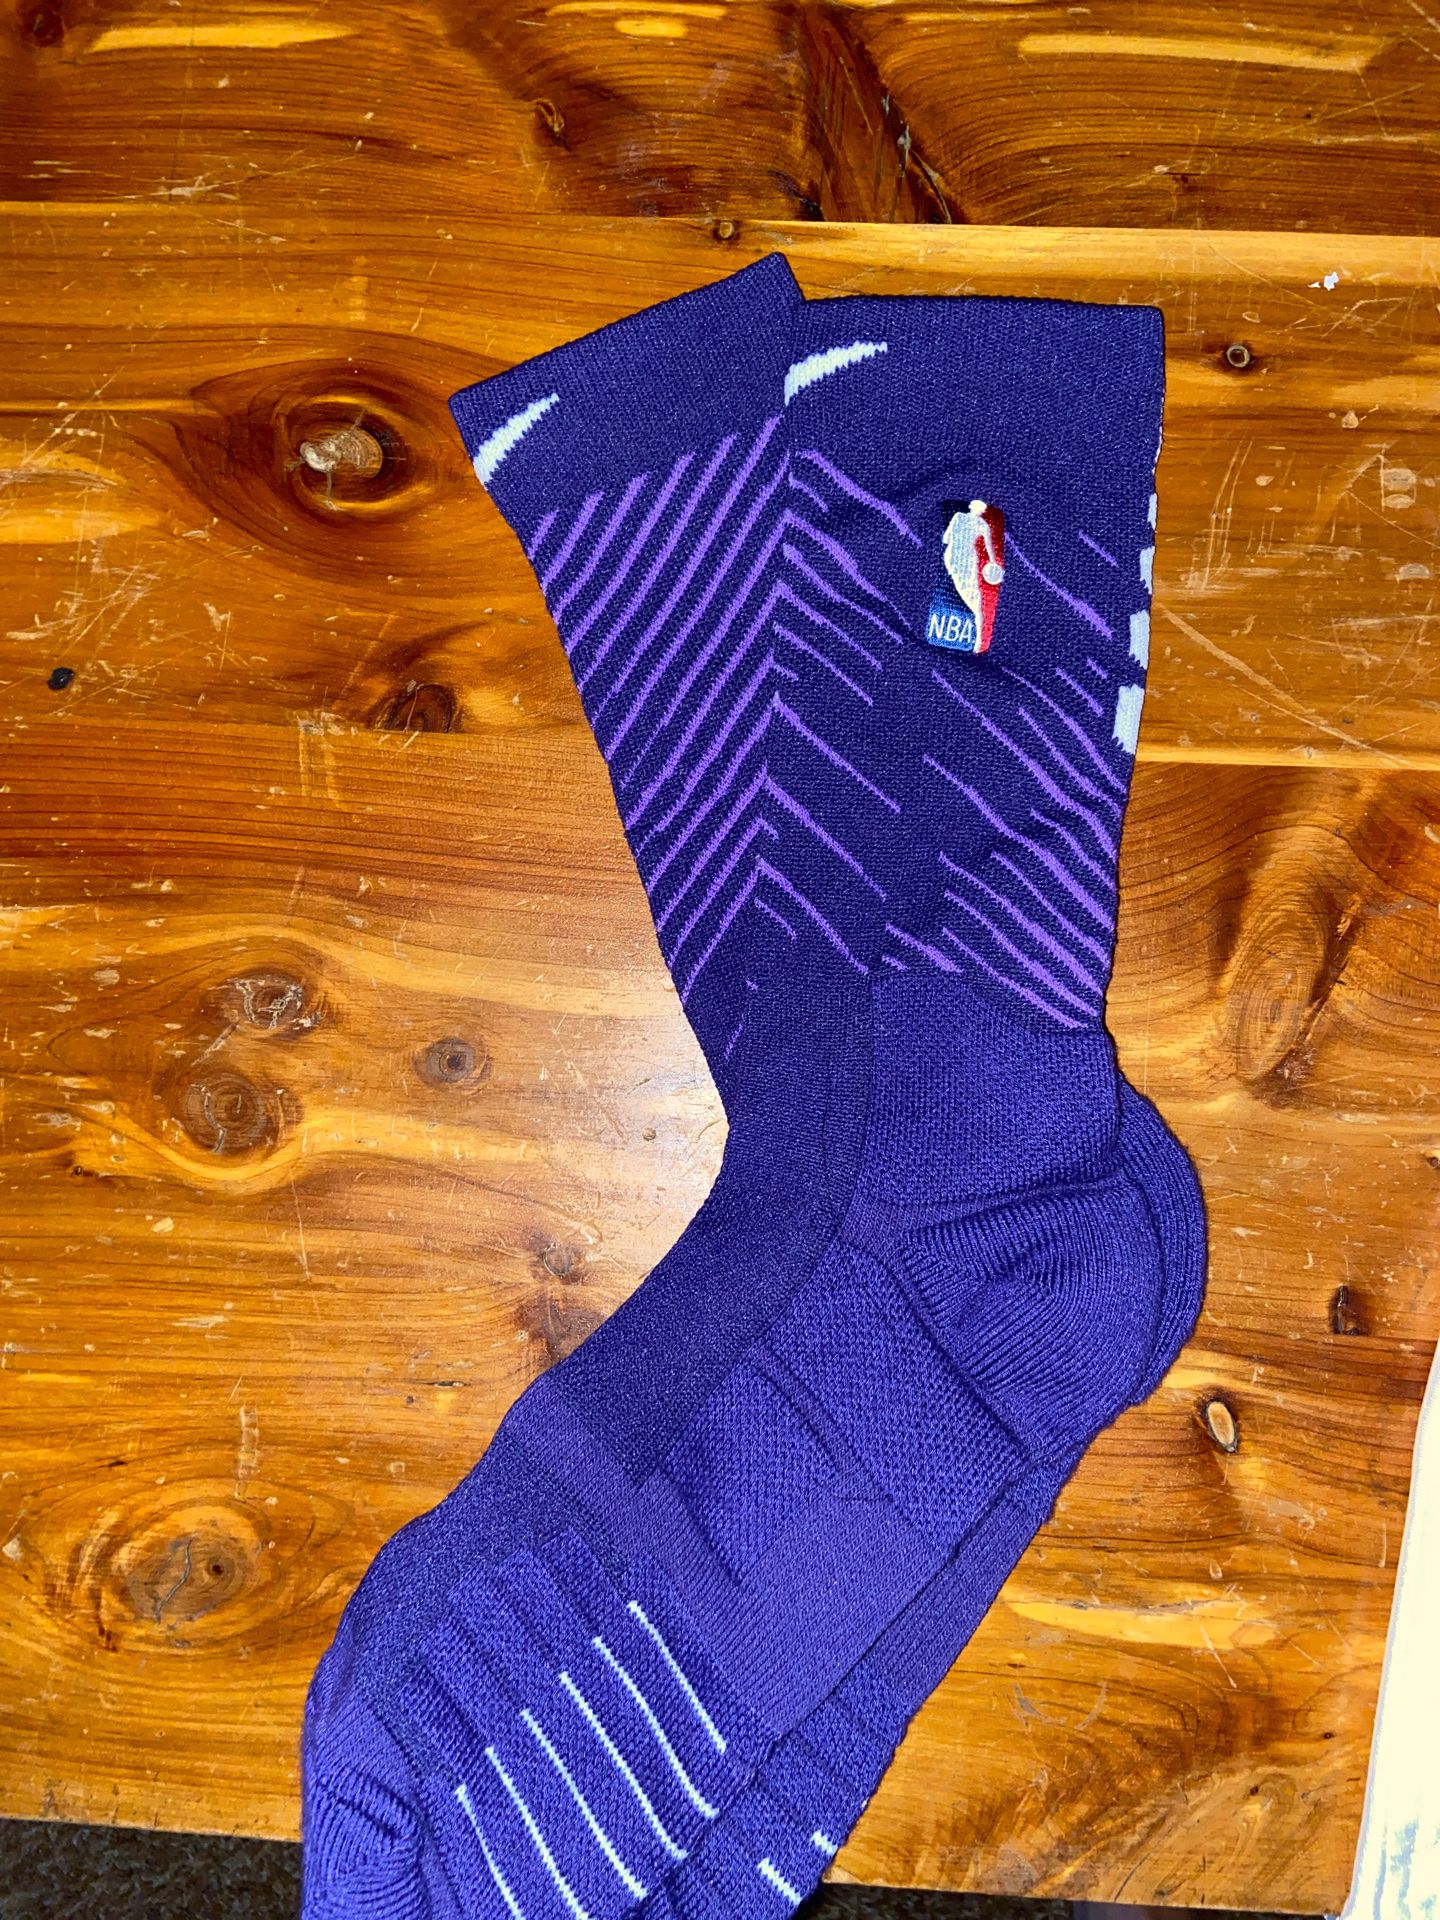 BRAND NEW Nike nba men’s purple socks-large